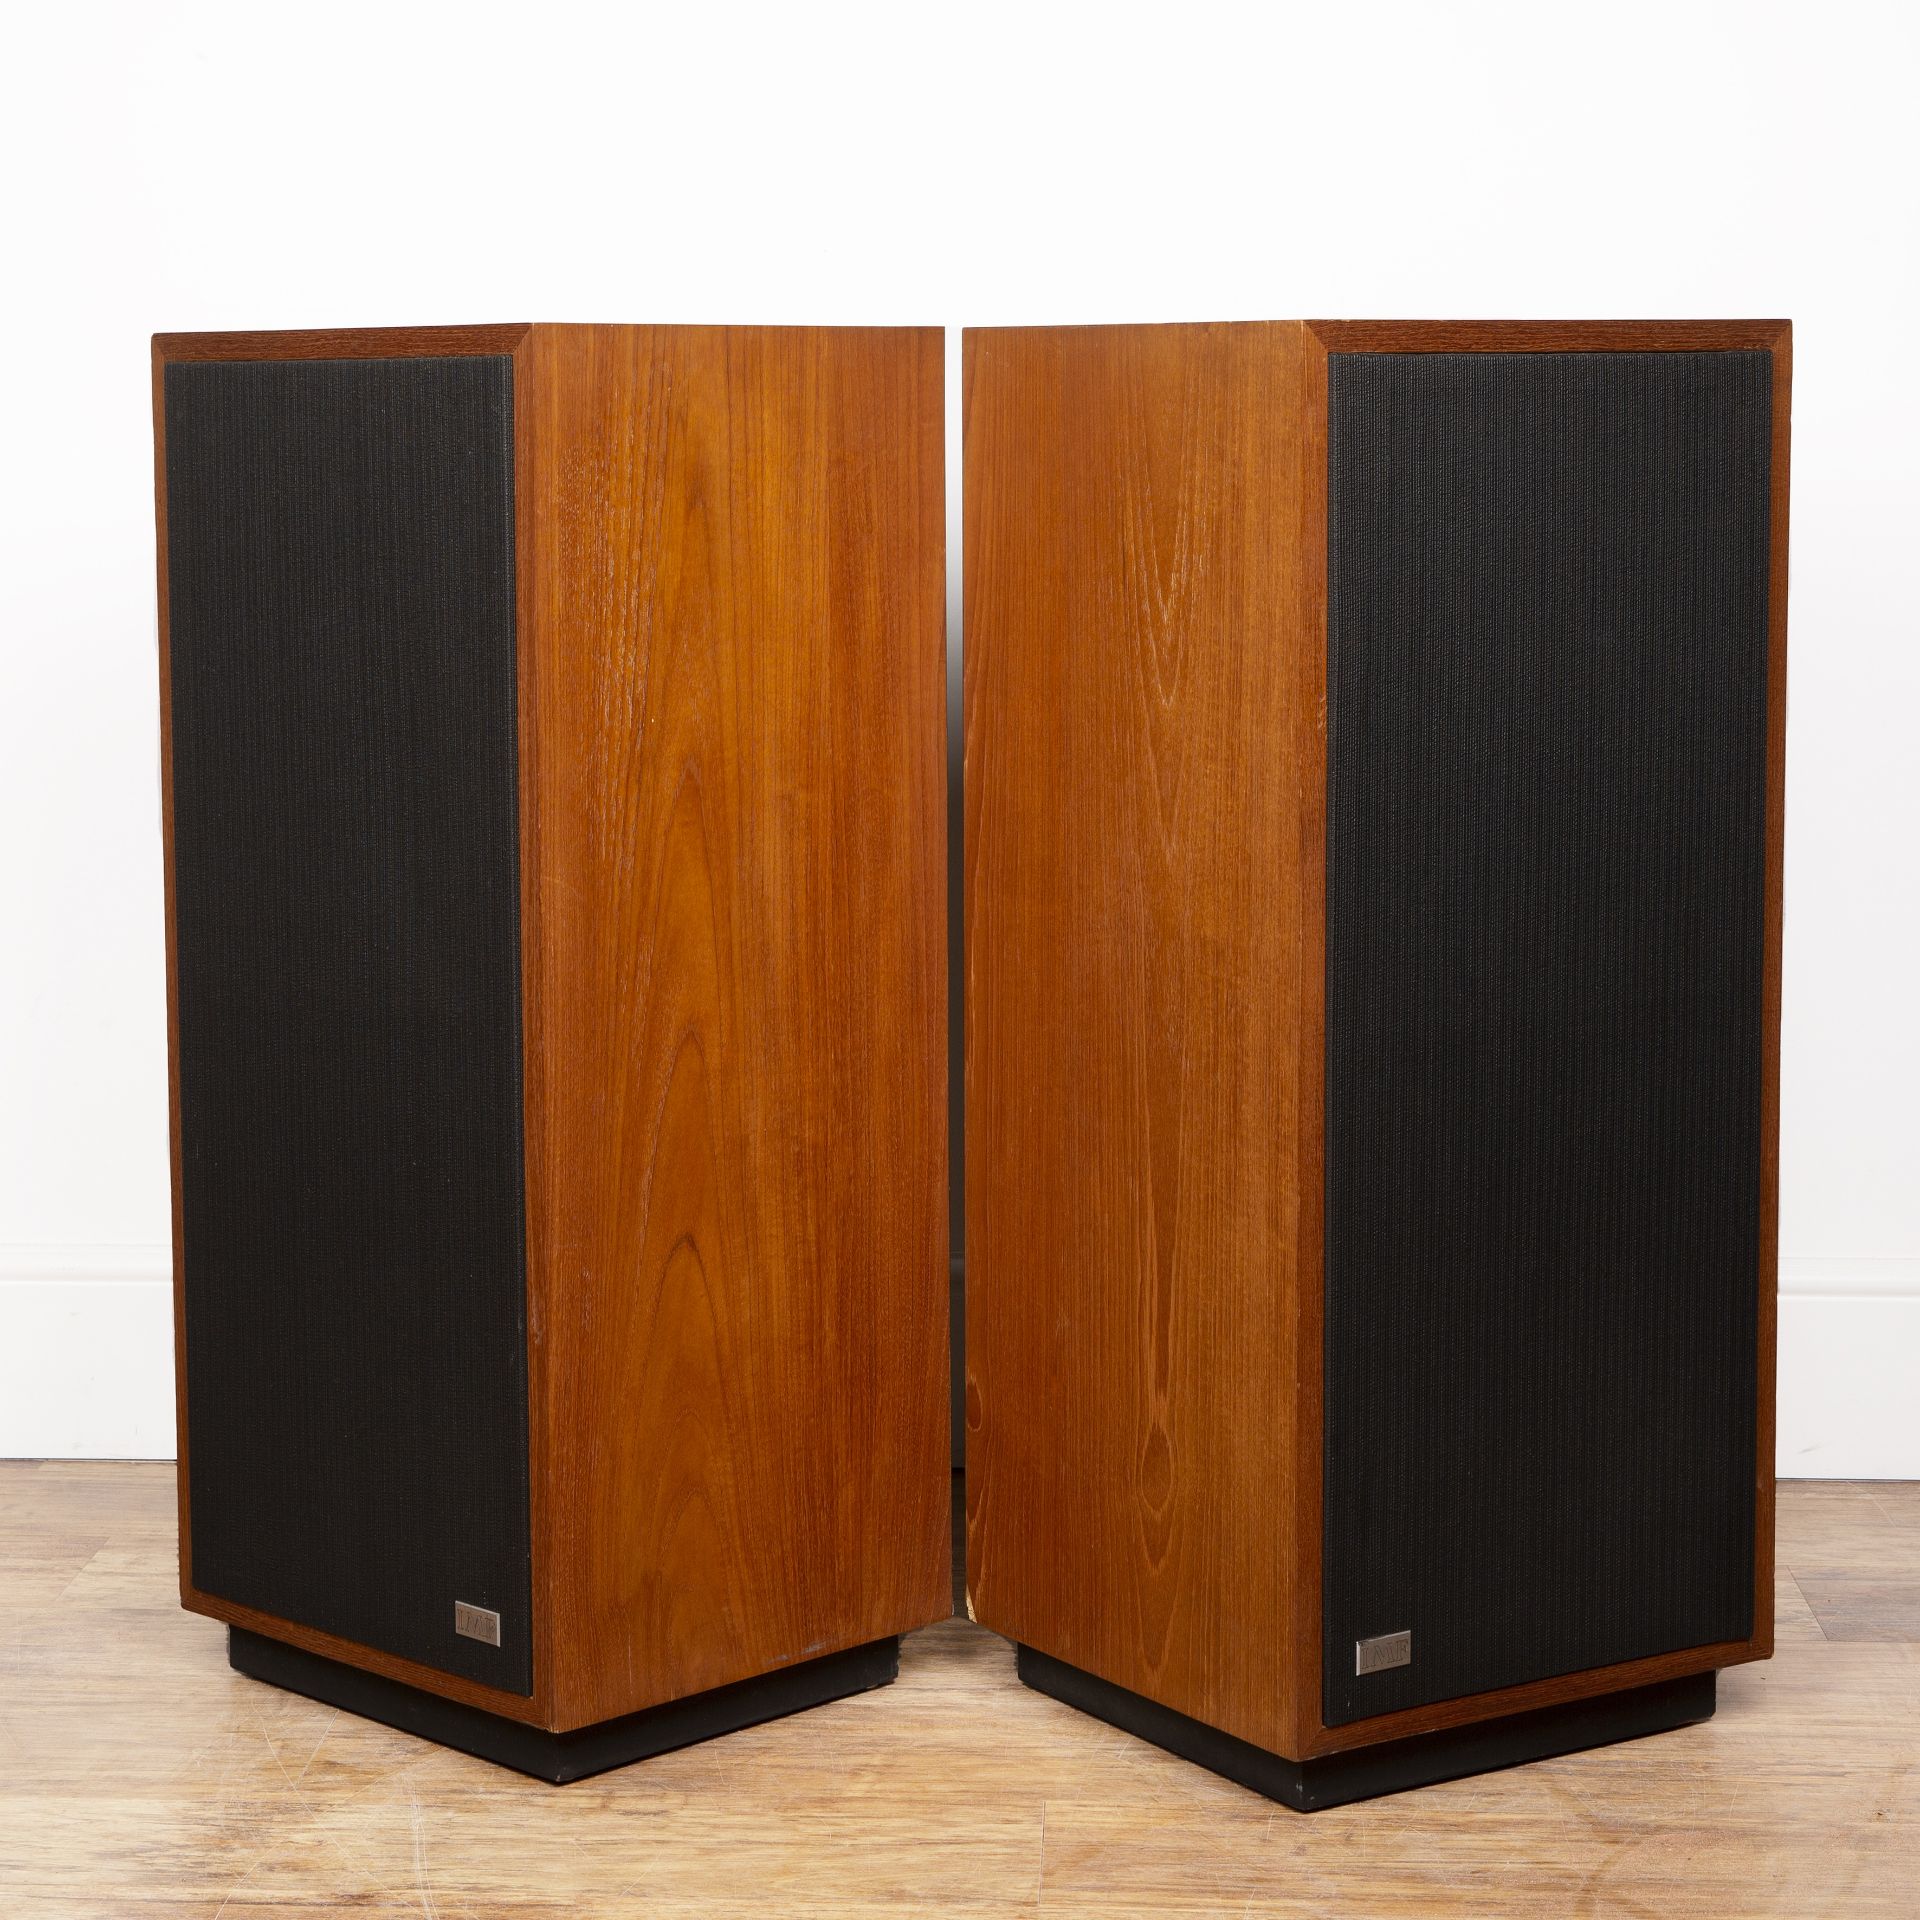 Pair of IMF speakers teak cased, each speaker measures 38cm wide x 88cm high x 35cm deep Overall - Image 2 of 15